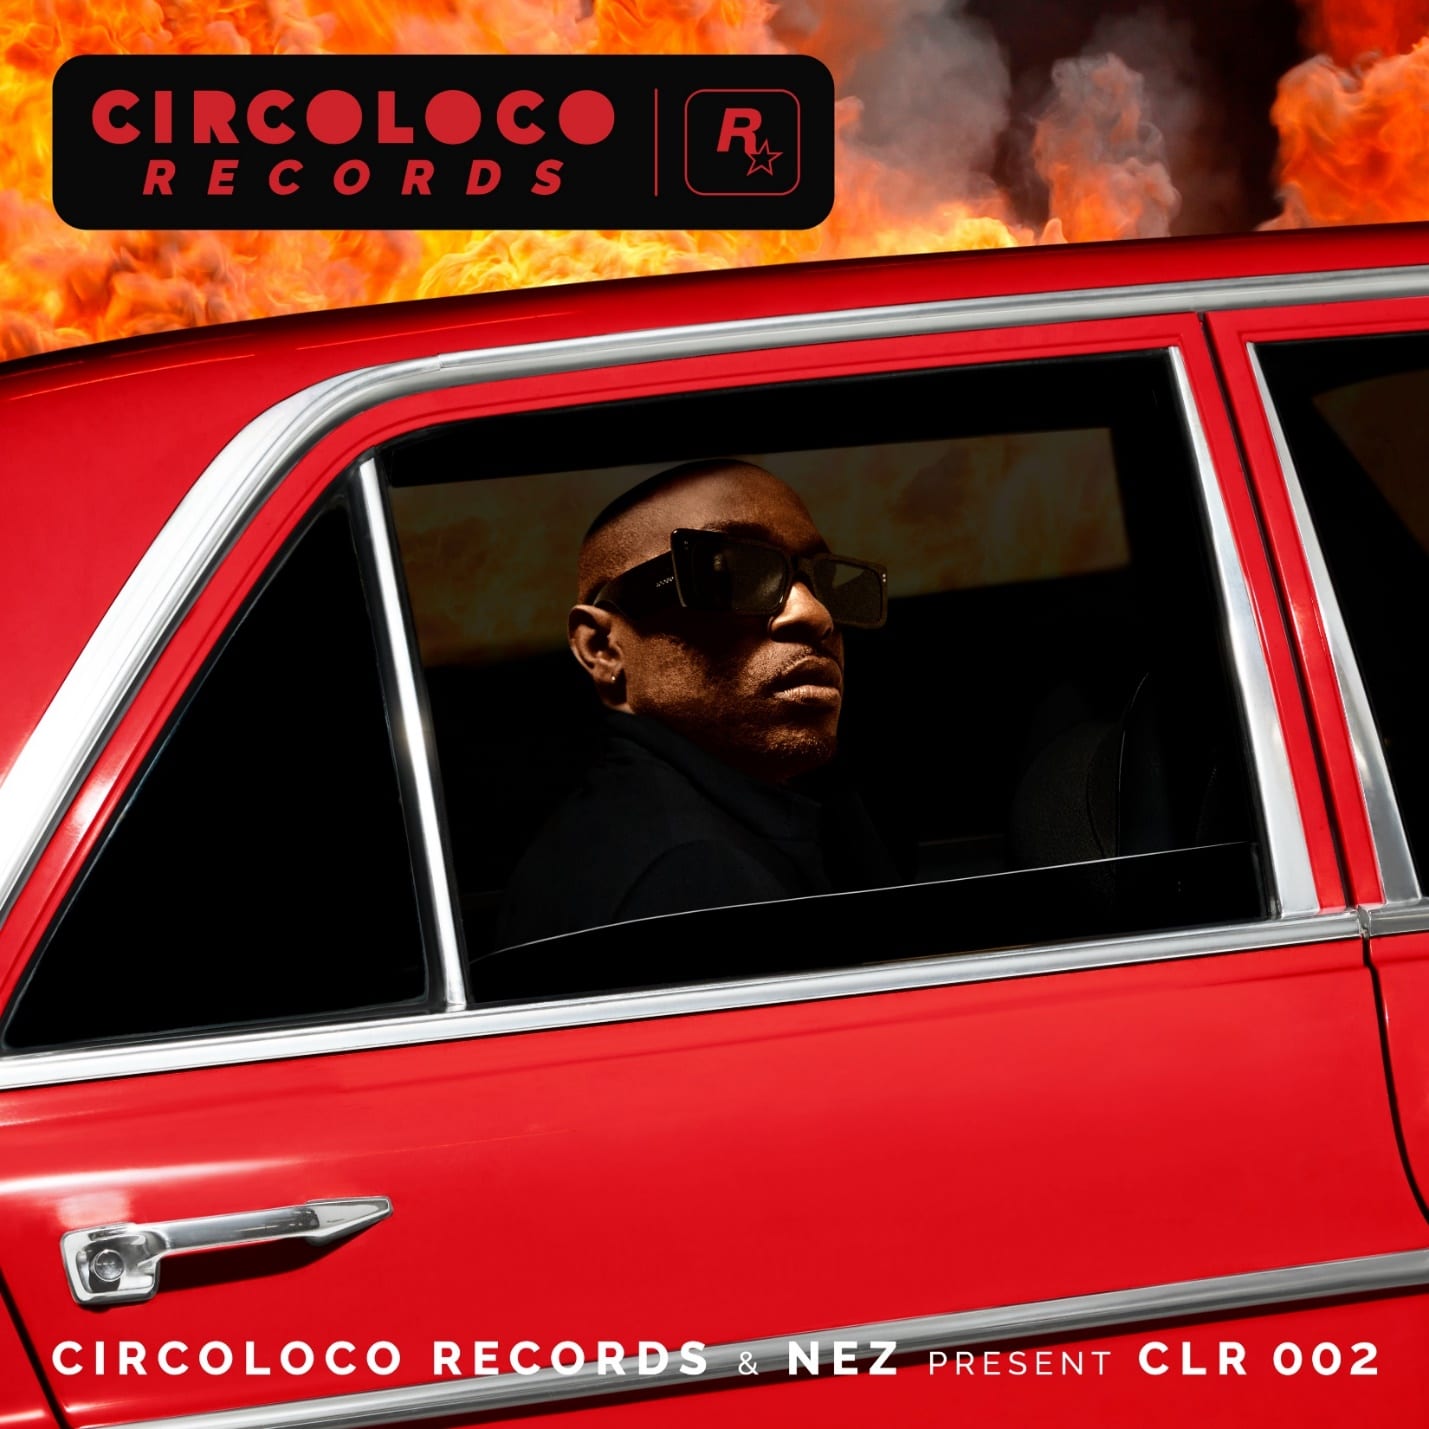 GTA Online Nuevo EP de Hip Hop “CircoLoco Records & NEZ Present CLR 002” con ScHoolboy Q, Moodymann y Gangsta Boo disponible el 25 de febrero, GAMERSRD